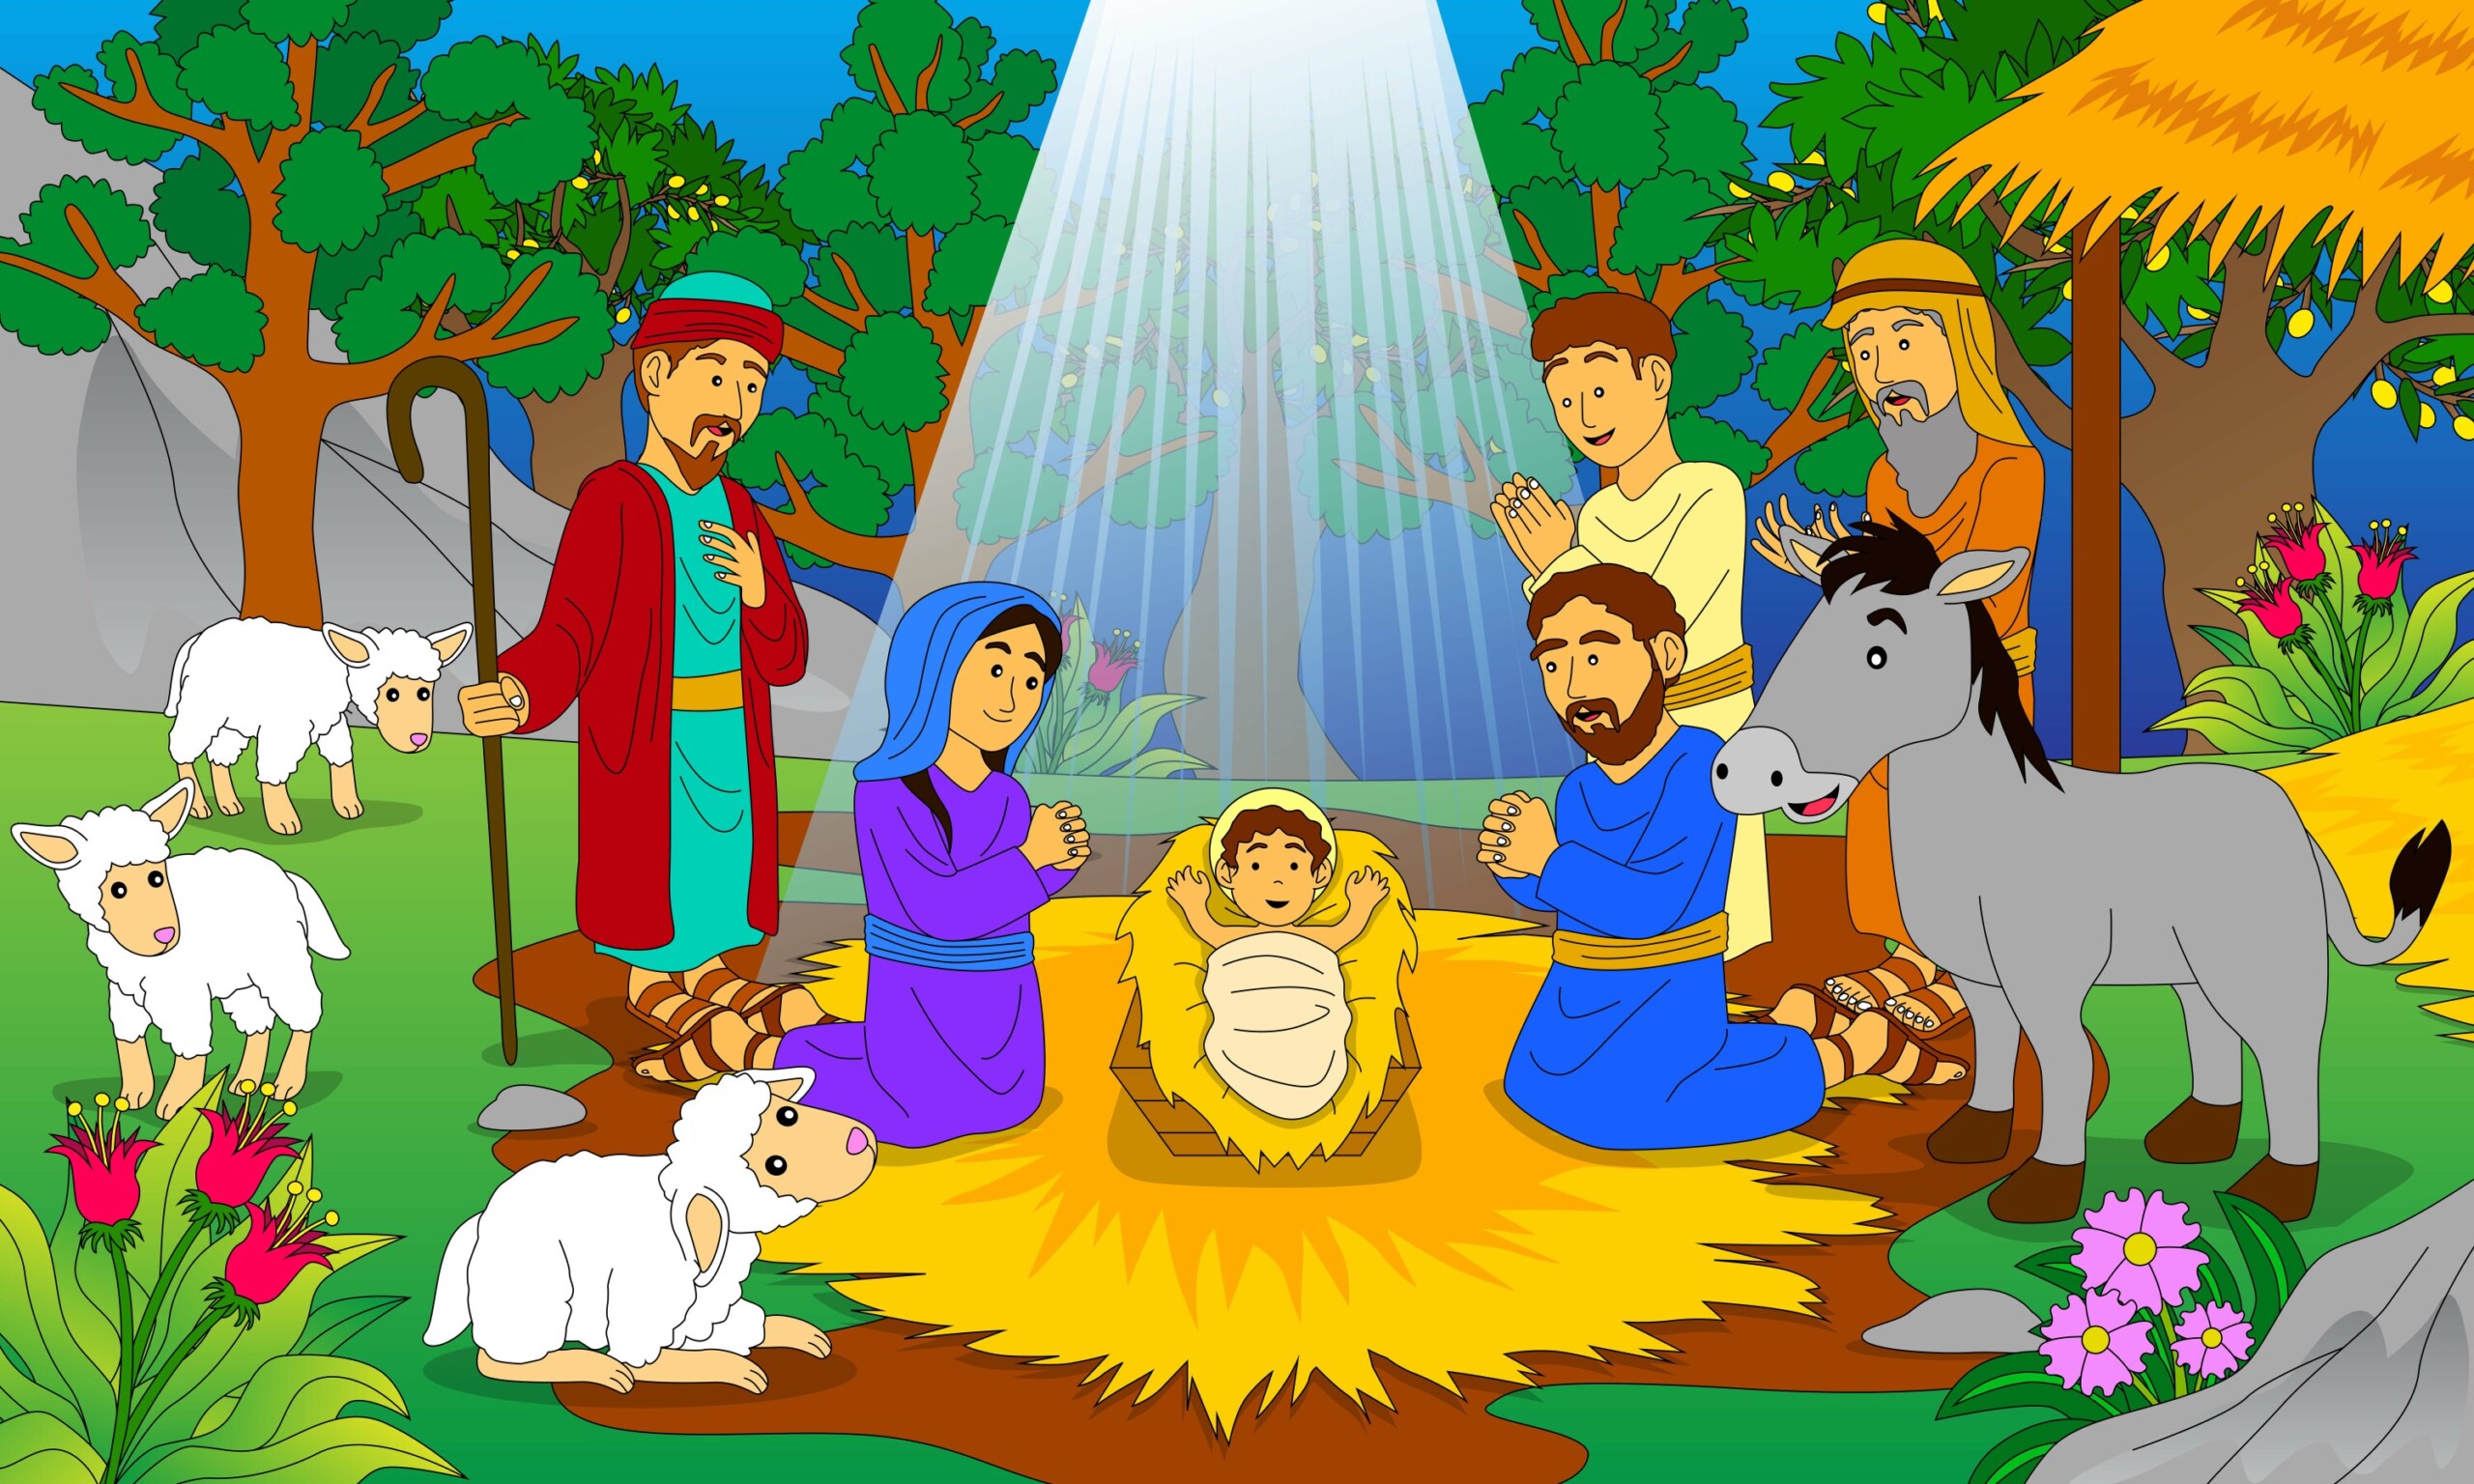 Three Wise Men Visit Baby Jesus - Original image